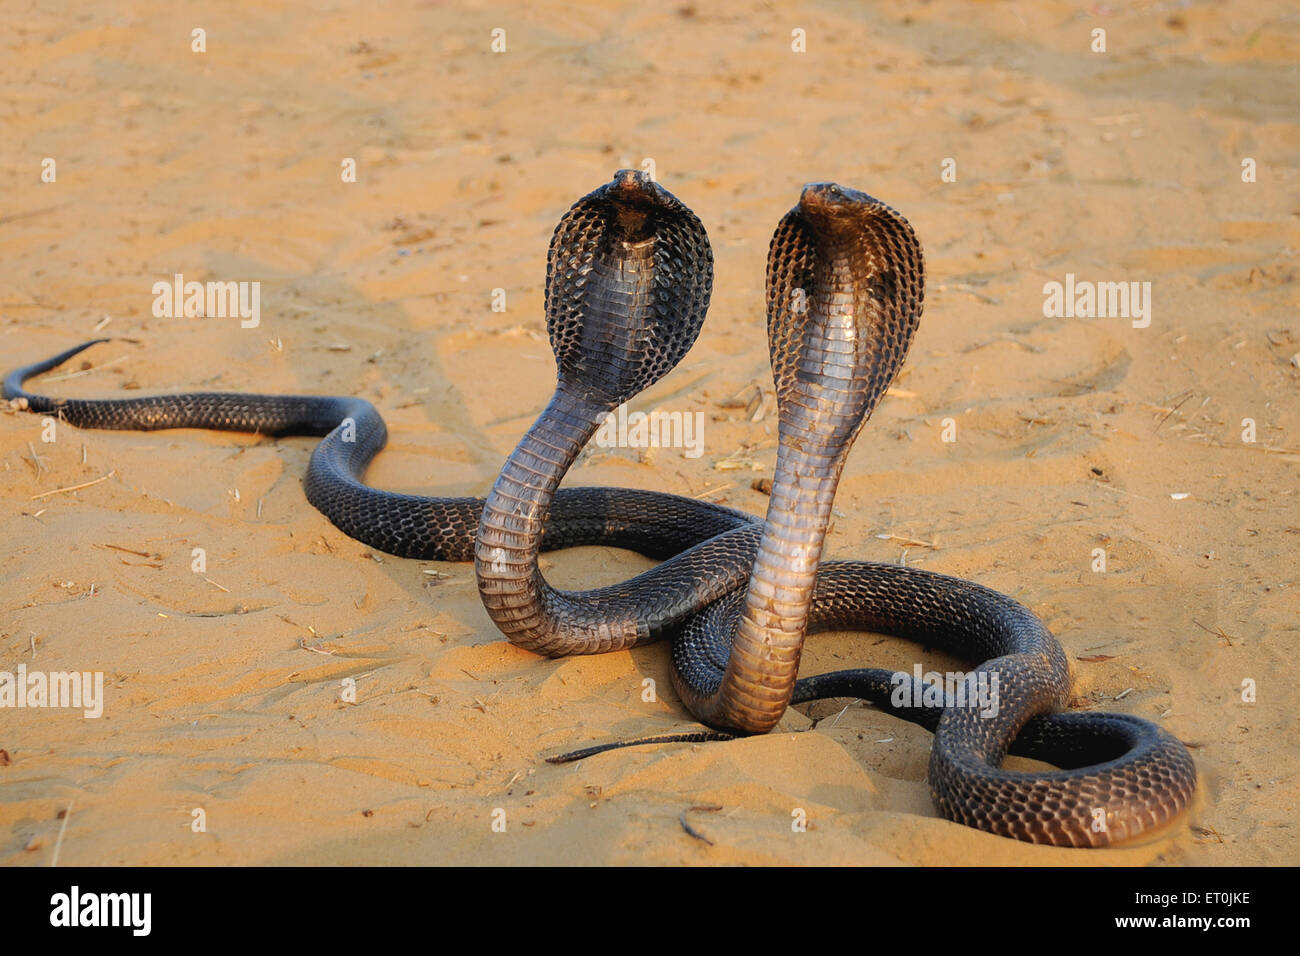 Indische Schlangen Stockfotos Und Bilder Kaufen Alamy